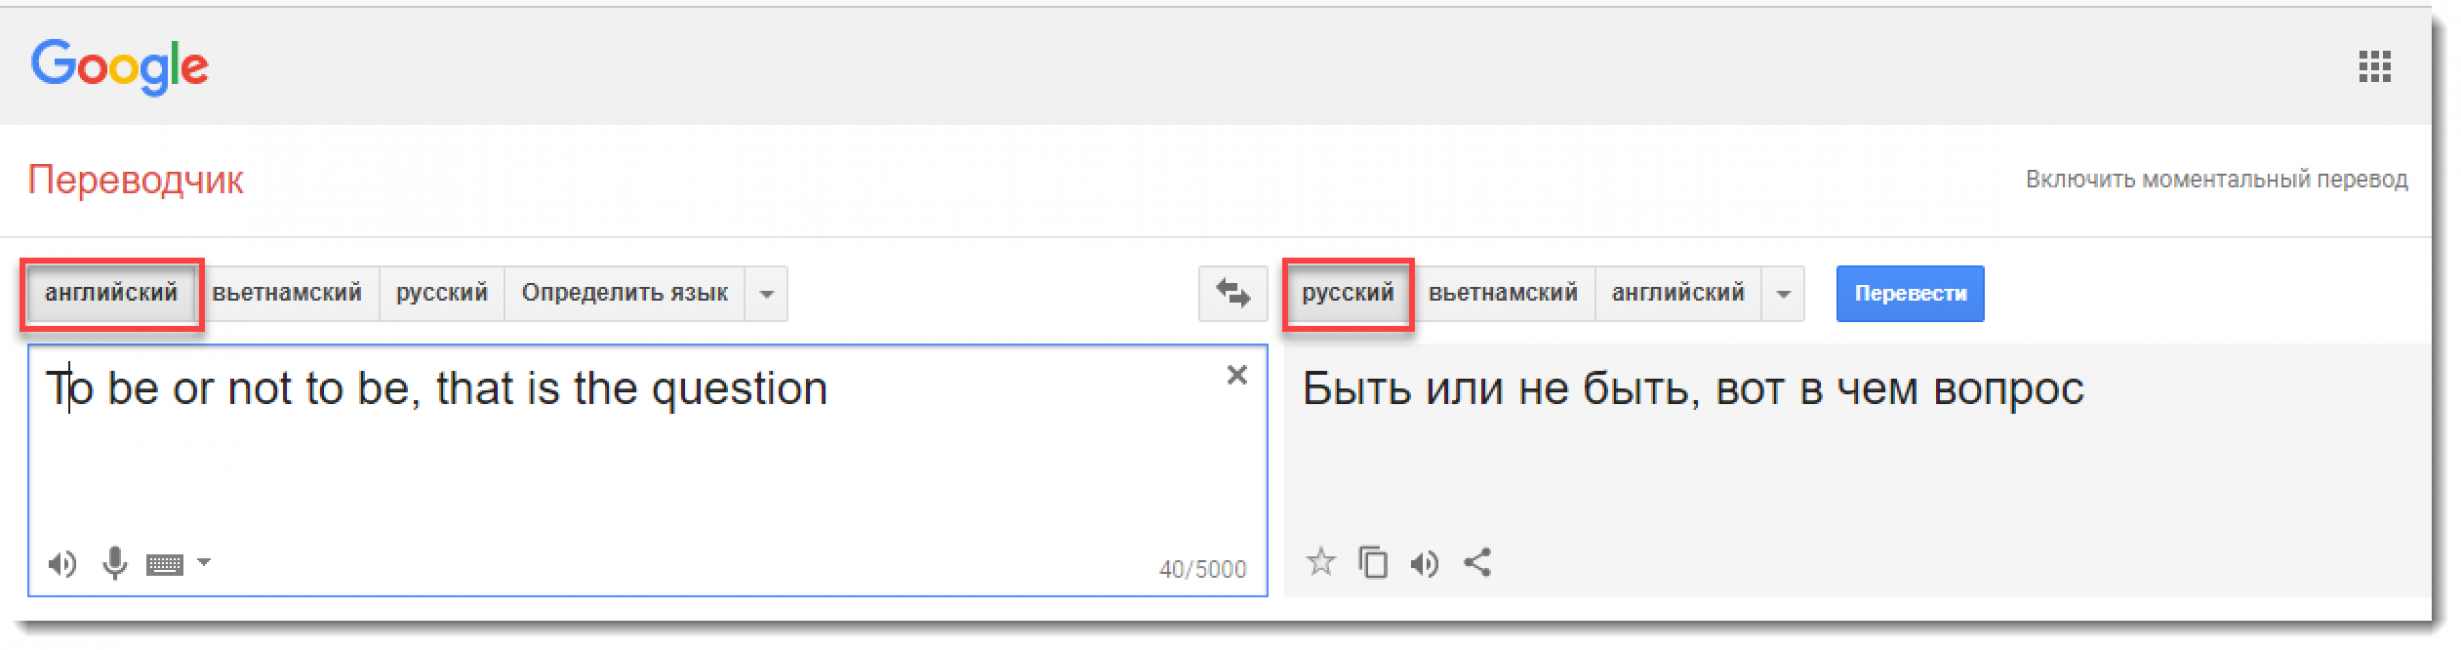 Как перевести с английского на русский по фото текста